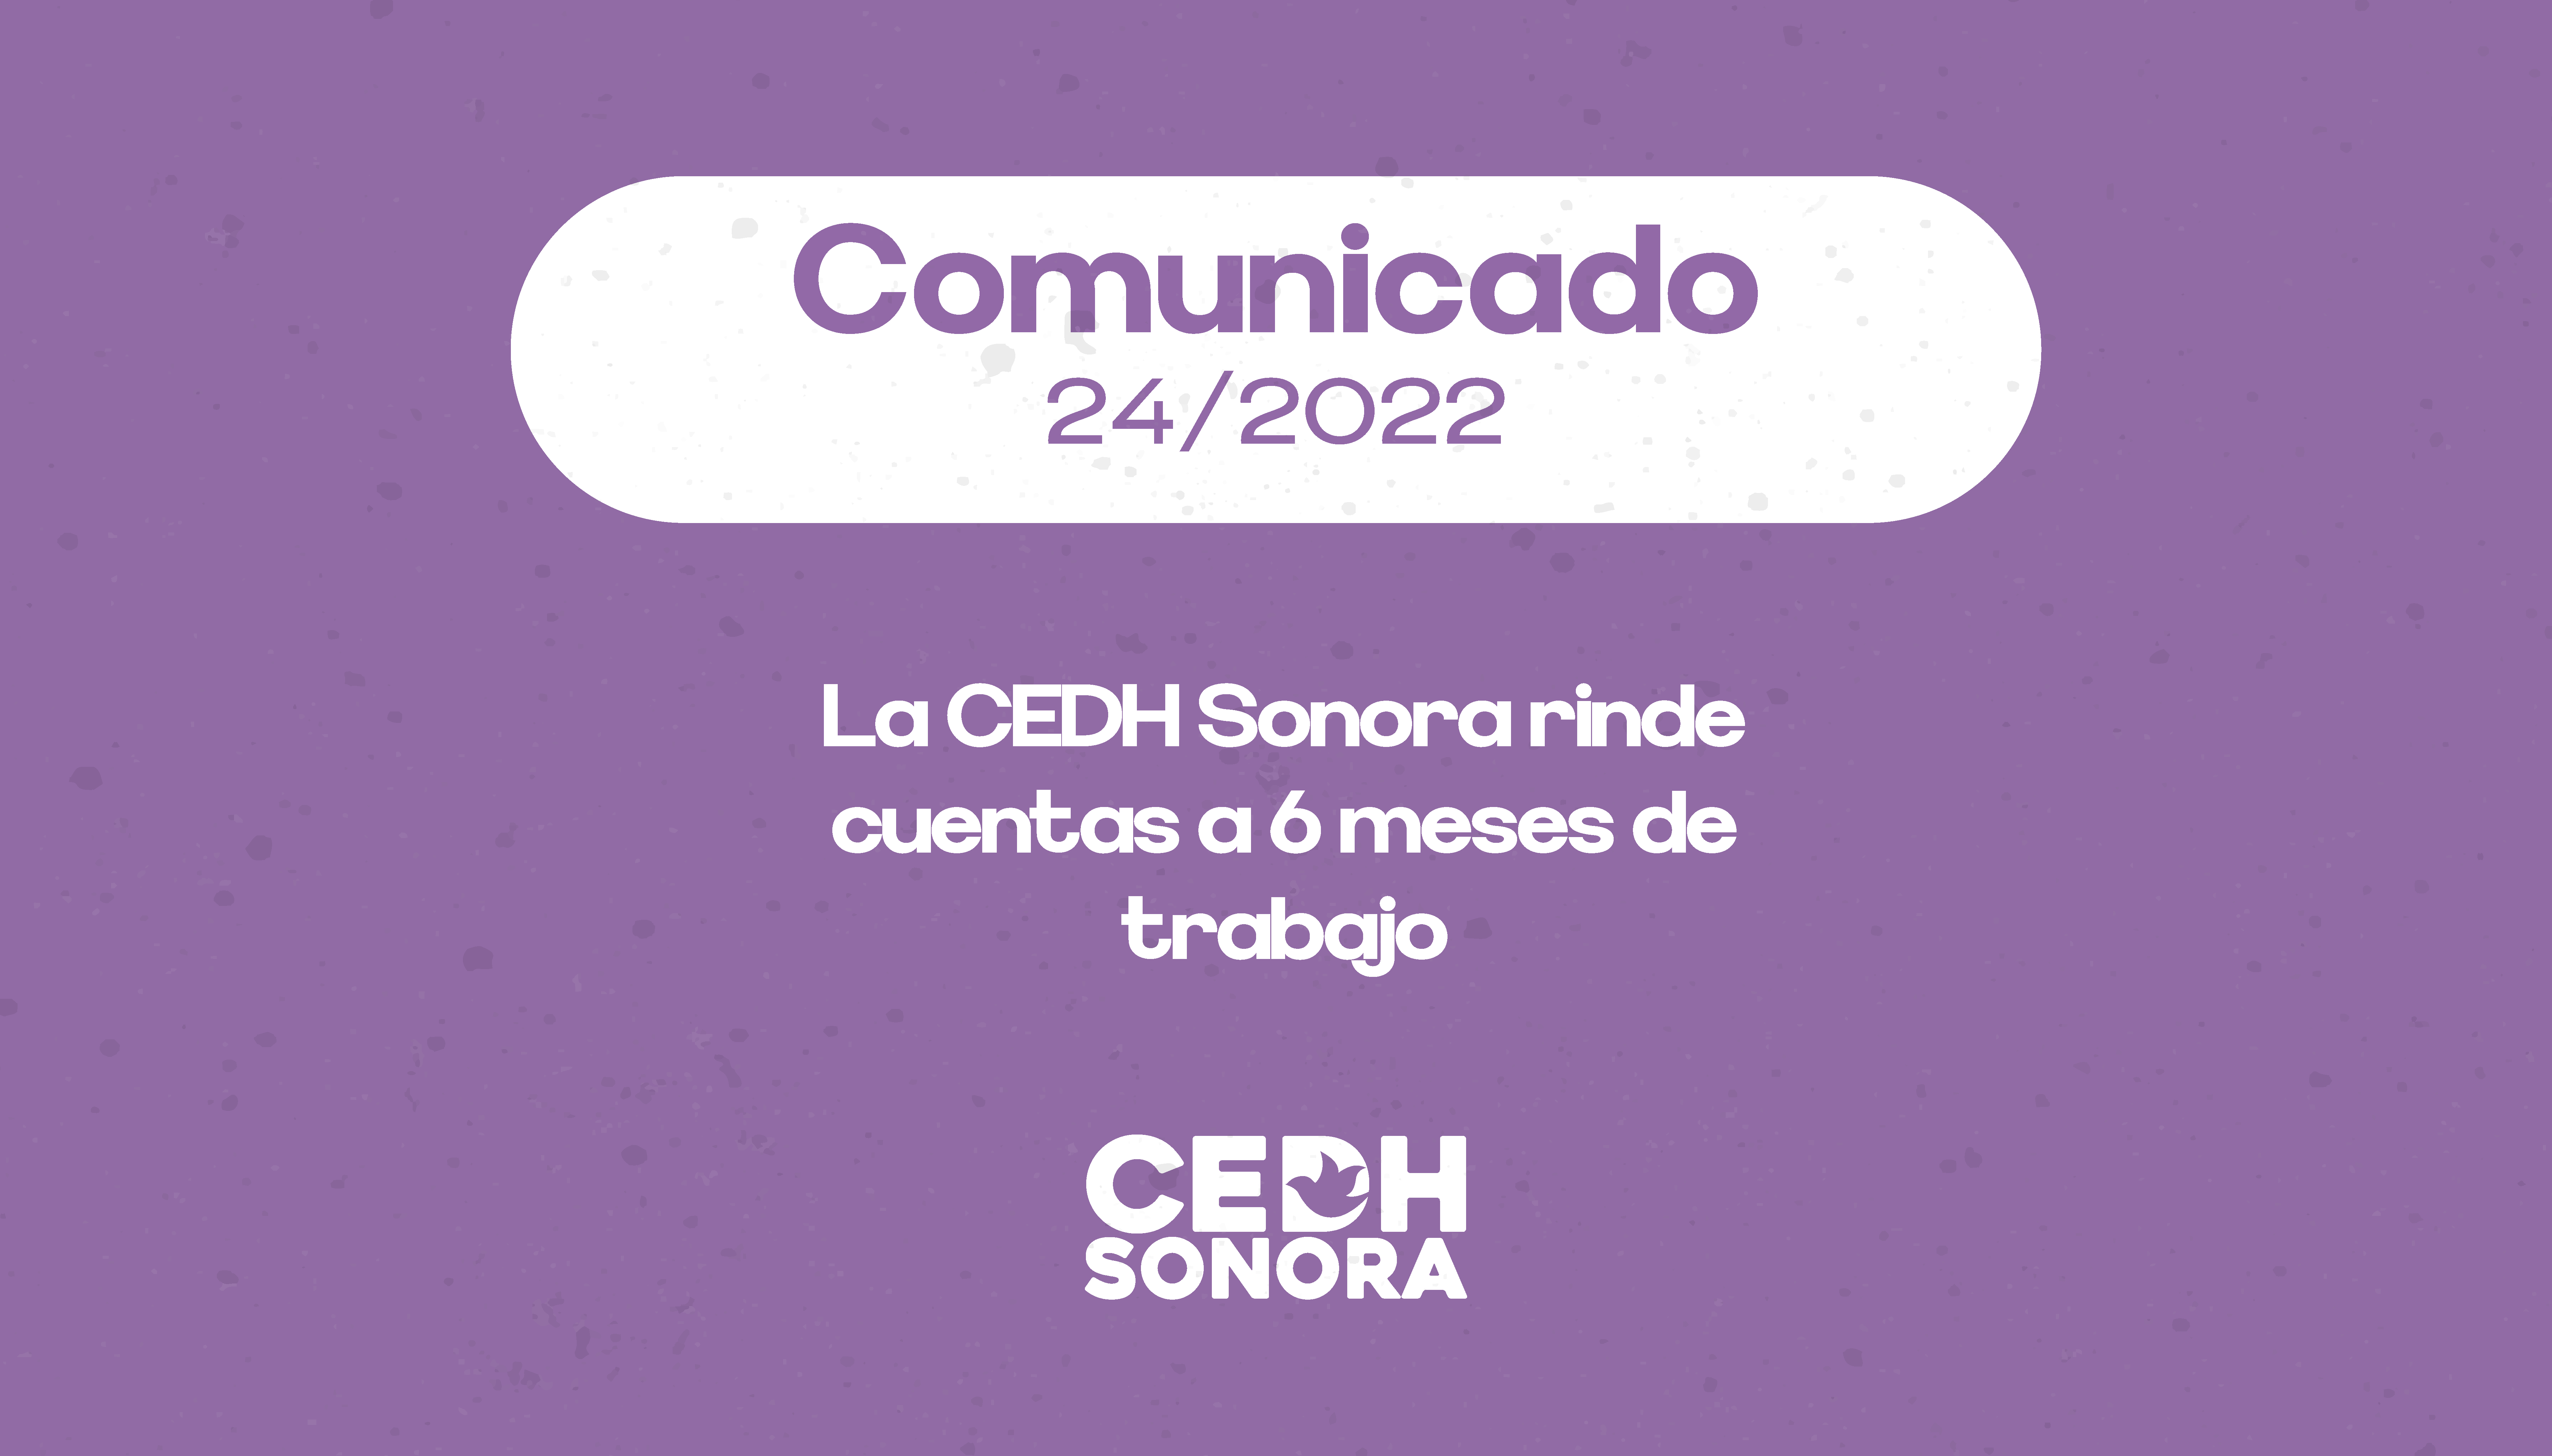 La CEDH Sonora rinde cuentas a 6 meses de trabajo